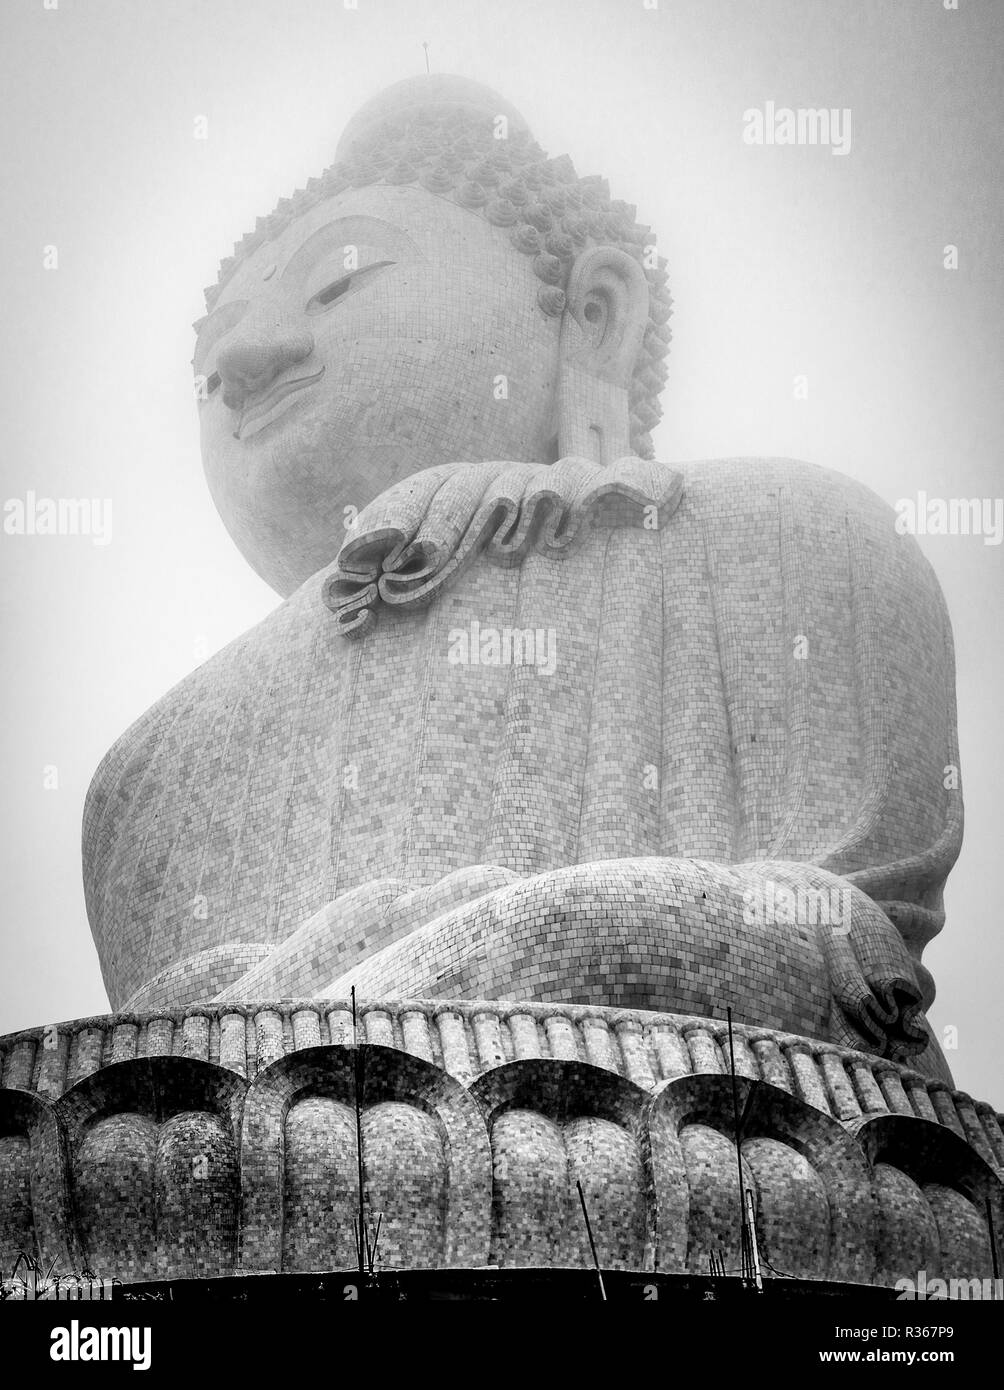 Schönen Buddha Statue zwischen den Wolken hoch oben auf einem Berg. Big Buddha Tempel in Phuket. Herrliche Tempel in Asien. Stockfoto